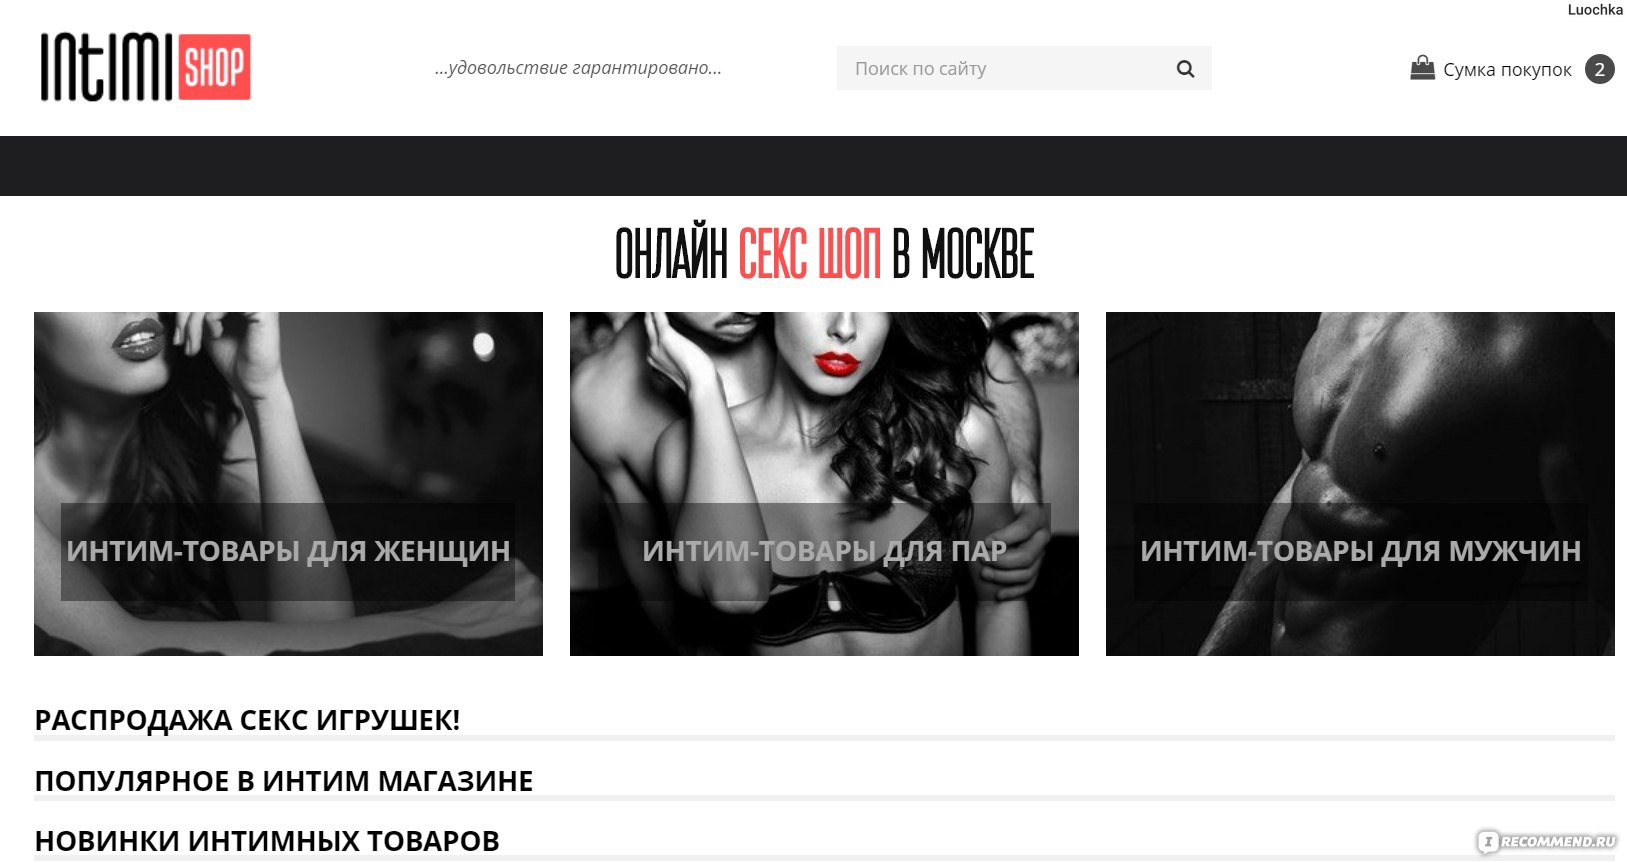 Секс шопы на Новослободской - Москва - адреса на карте, официальные сайты, часы работы